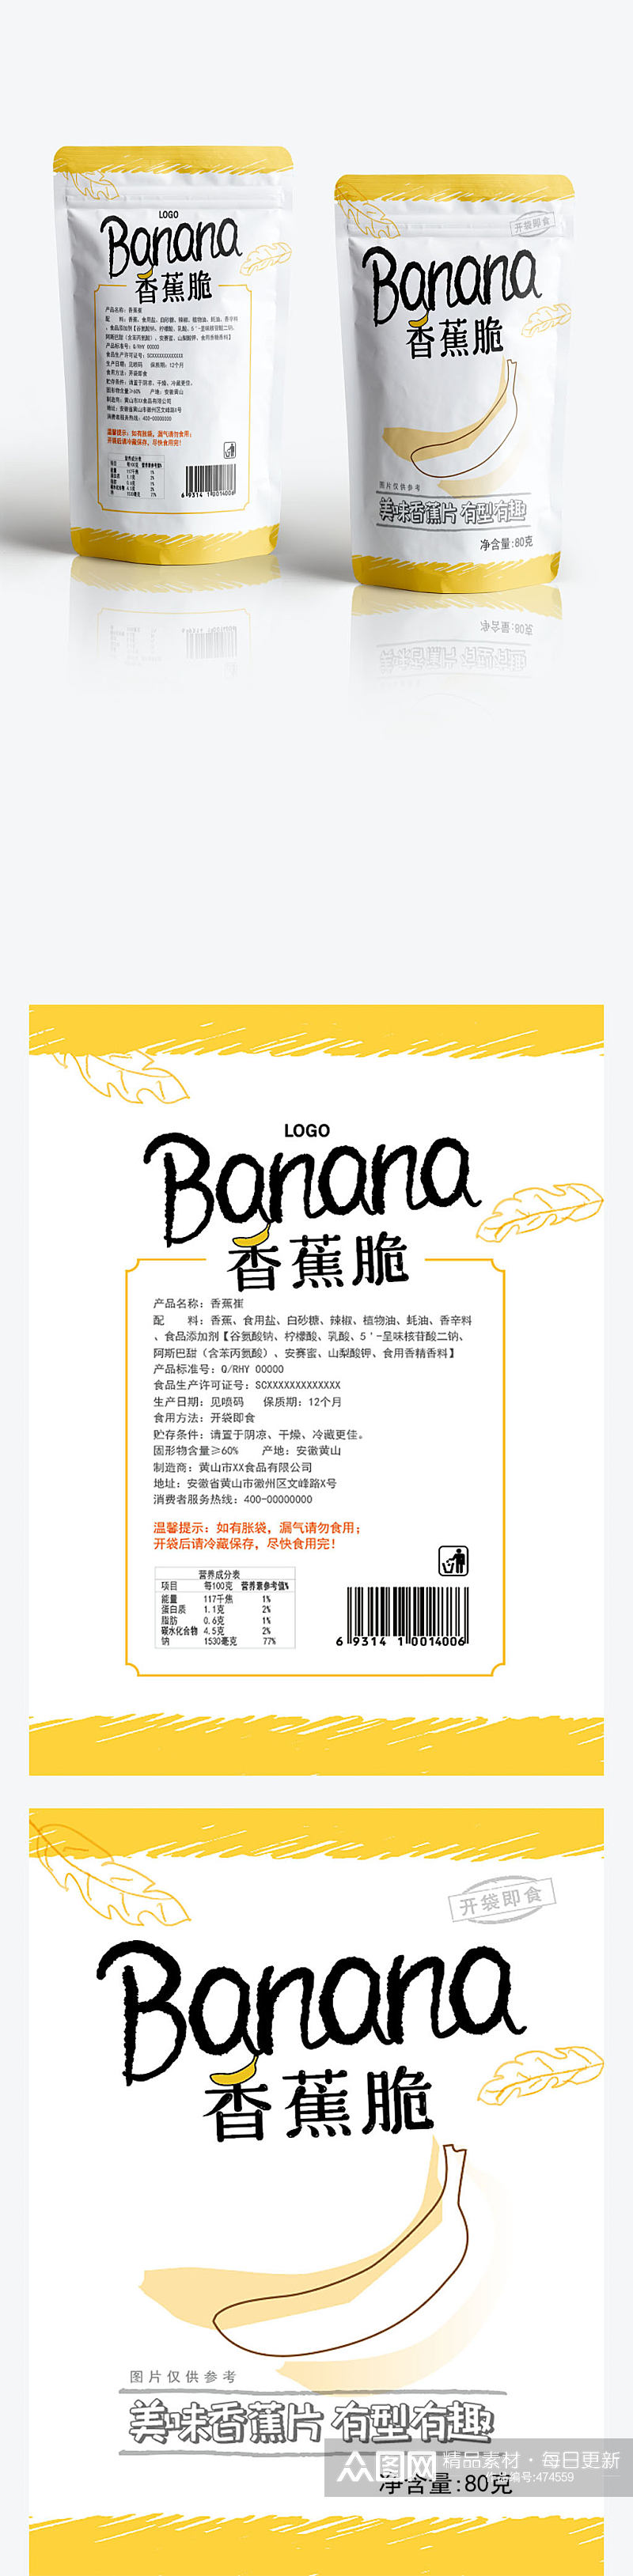 香蕉片零食包装设计素材